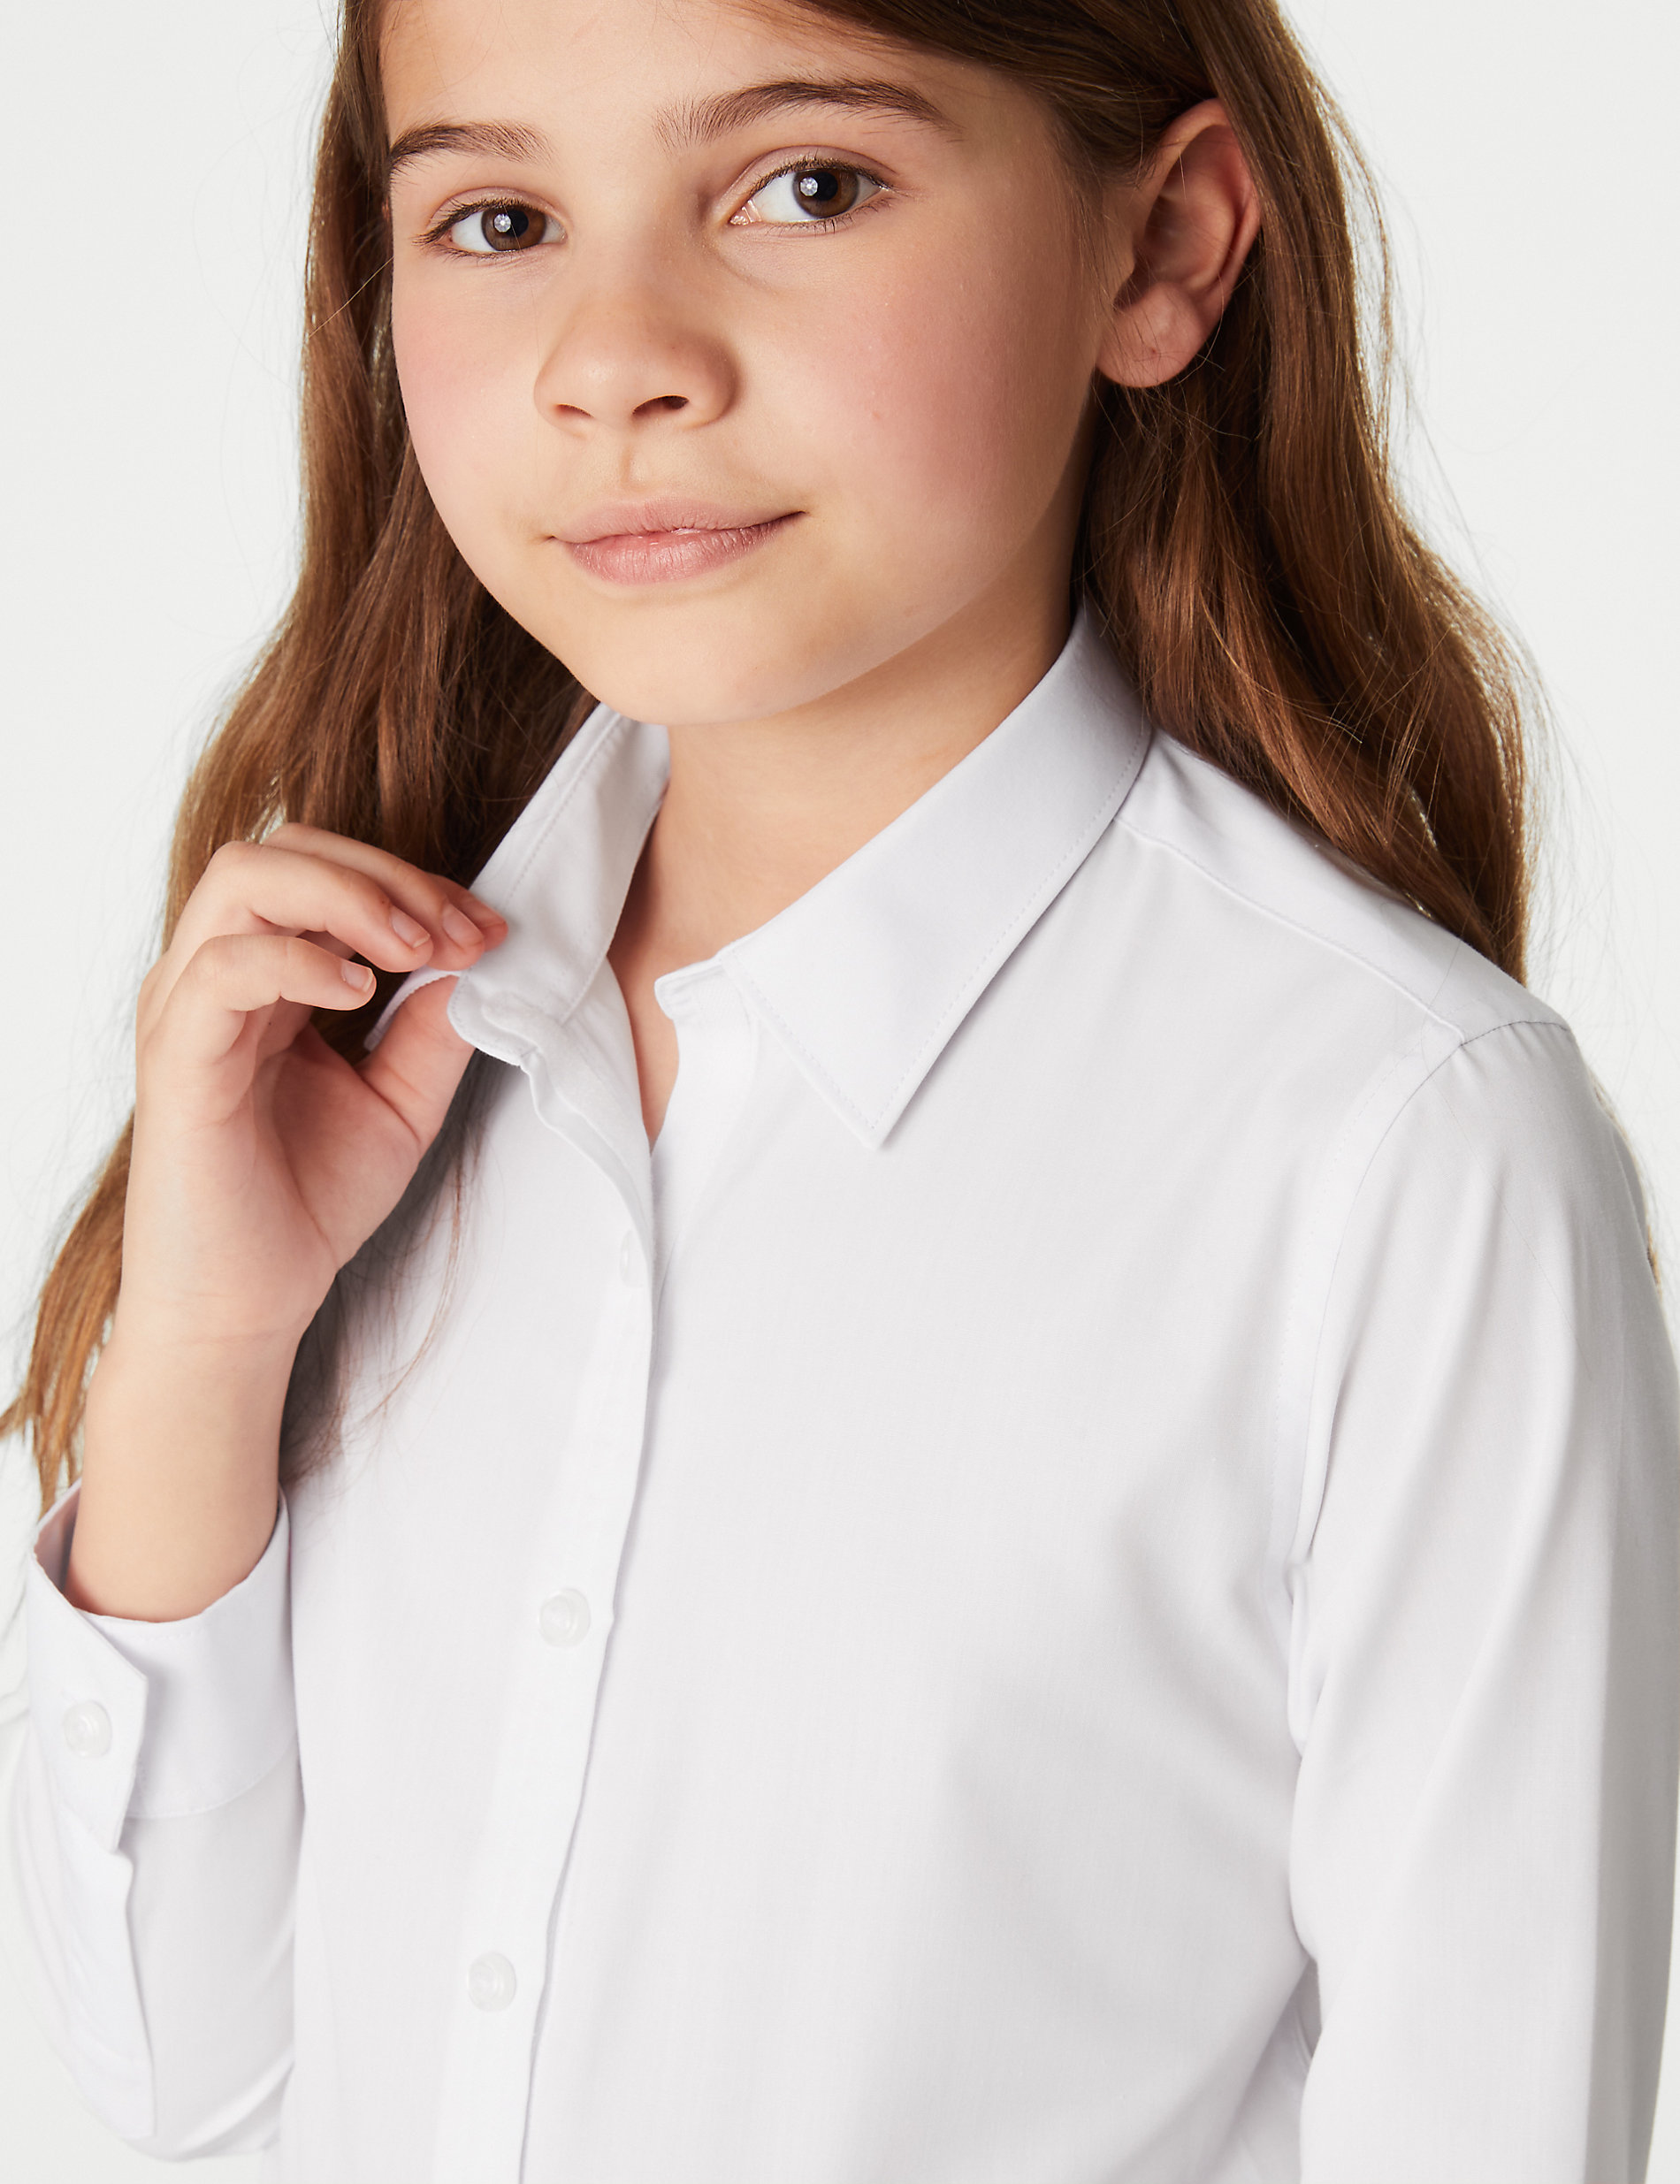 Lot de 3&nbsp;chemises filles faciles à enfiler et à repasser, idéales pour l’école (du 3&nbsp;au 18&nbsp;ans)